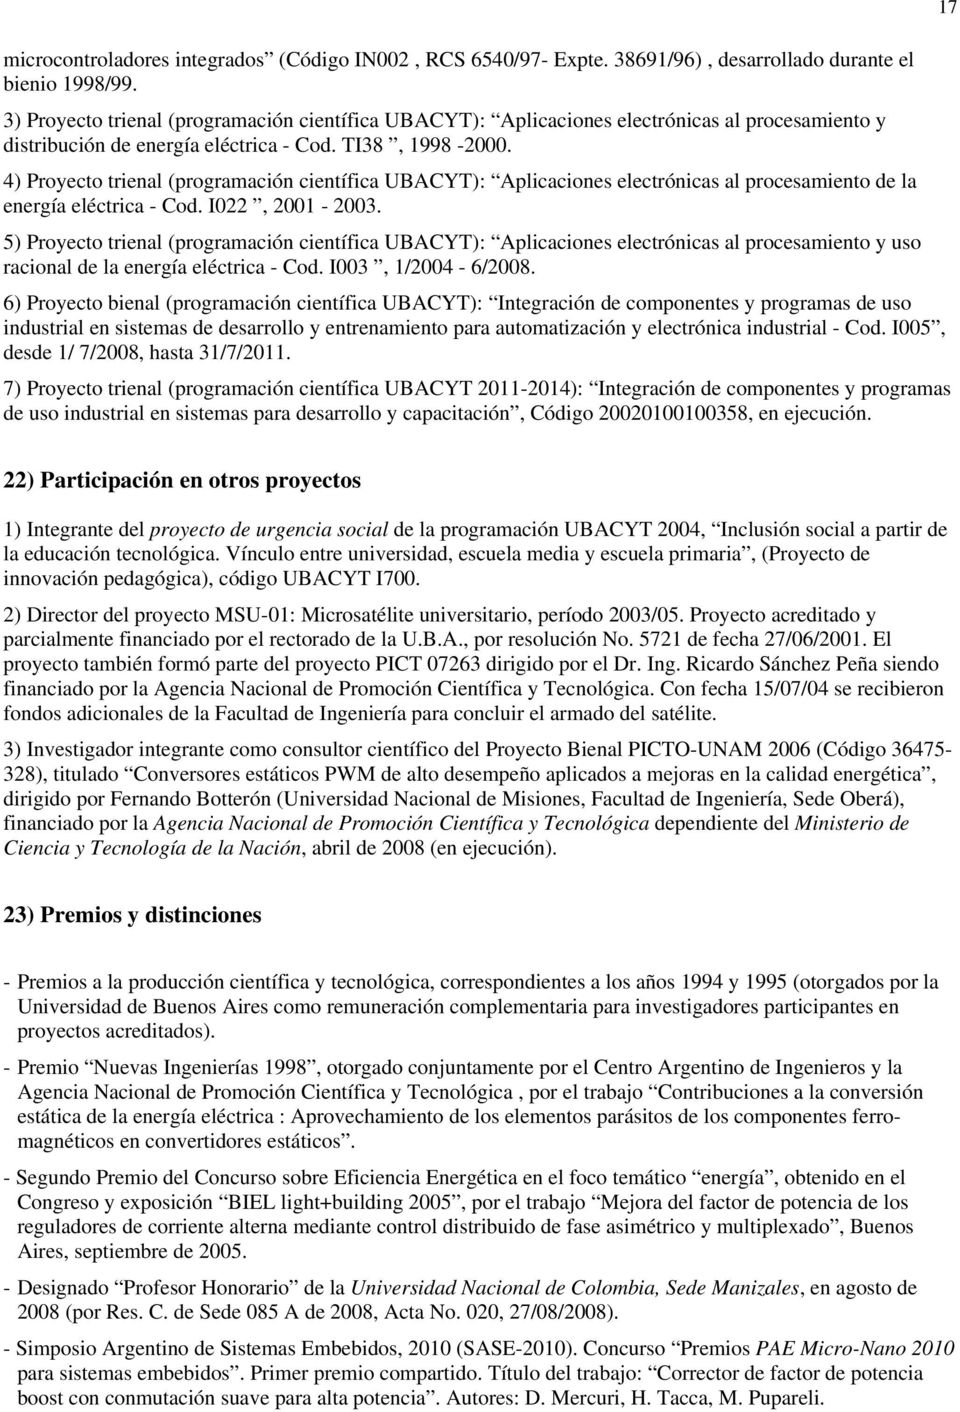 4) Proyecto trienal (programación científica UBACYT): Aplicaciones electrónicas al procesamiento de la energía eléctrica - Cod. I022, 2001-2003.